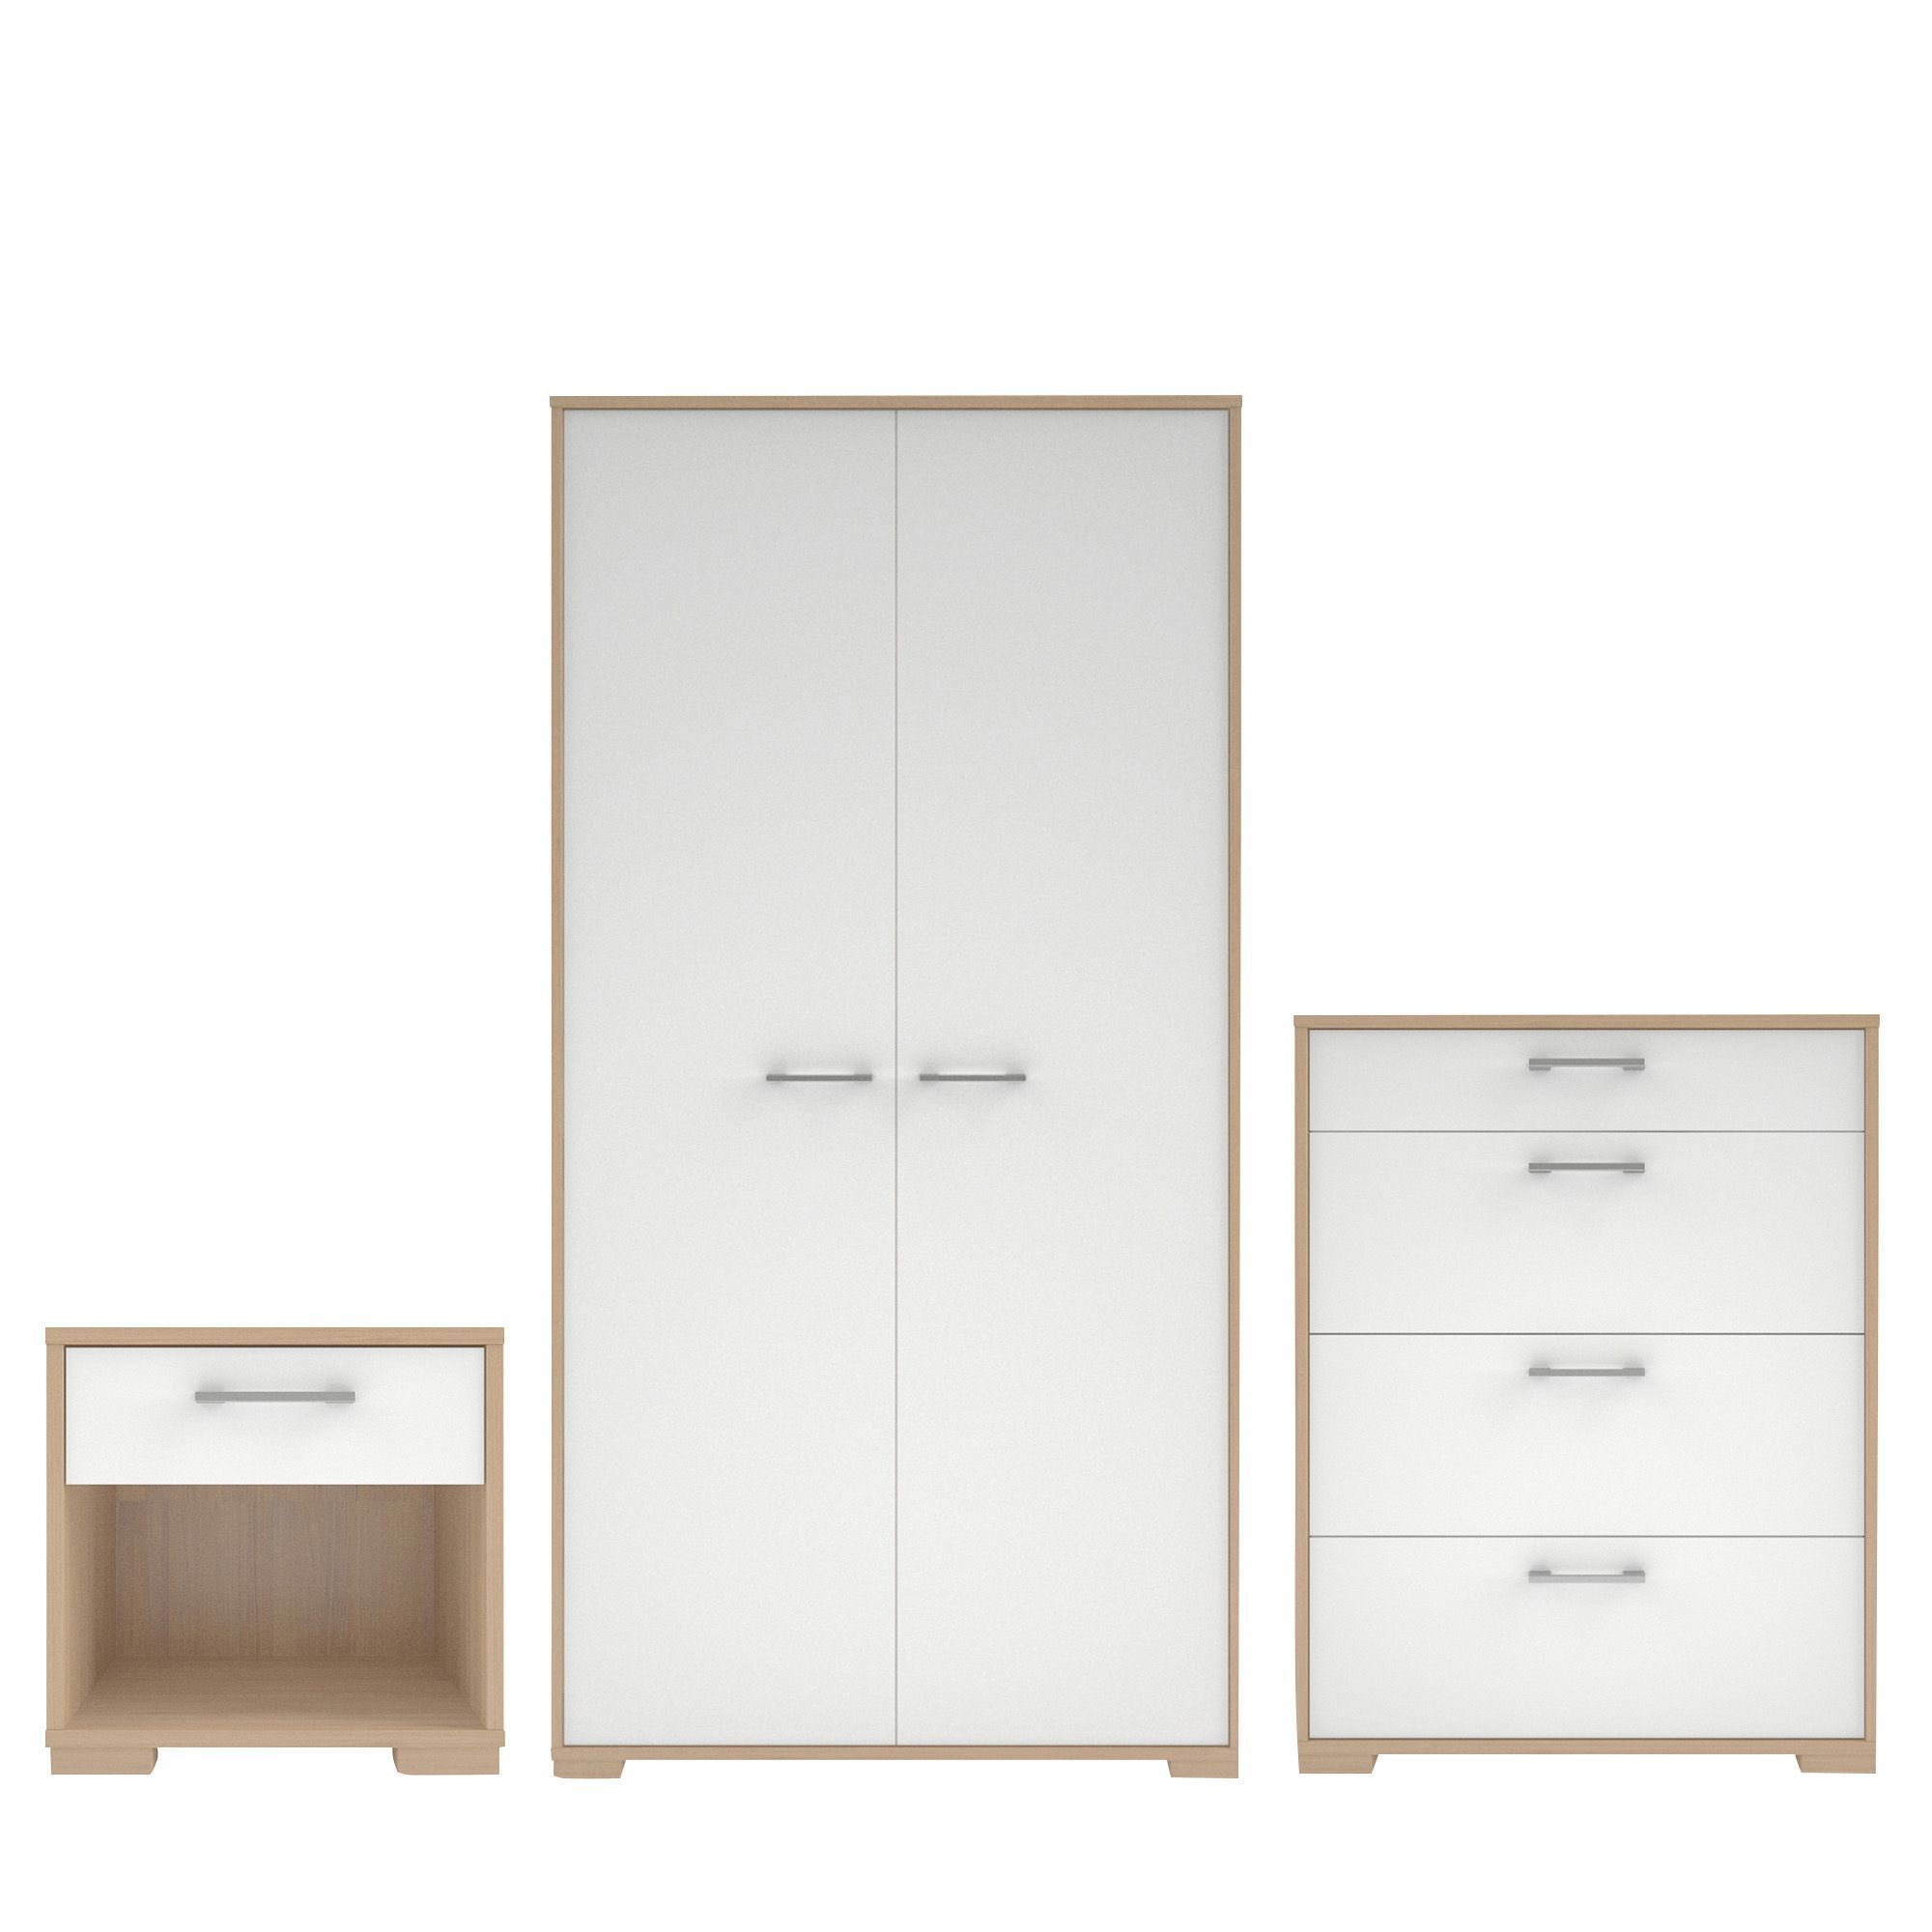 Tvilum Evie Matt & High Gloss White Oak Effect 3 Piece Bedroom Furniture Set